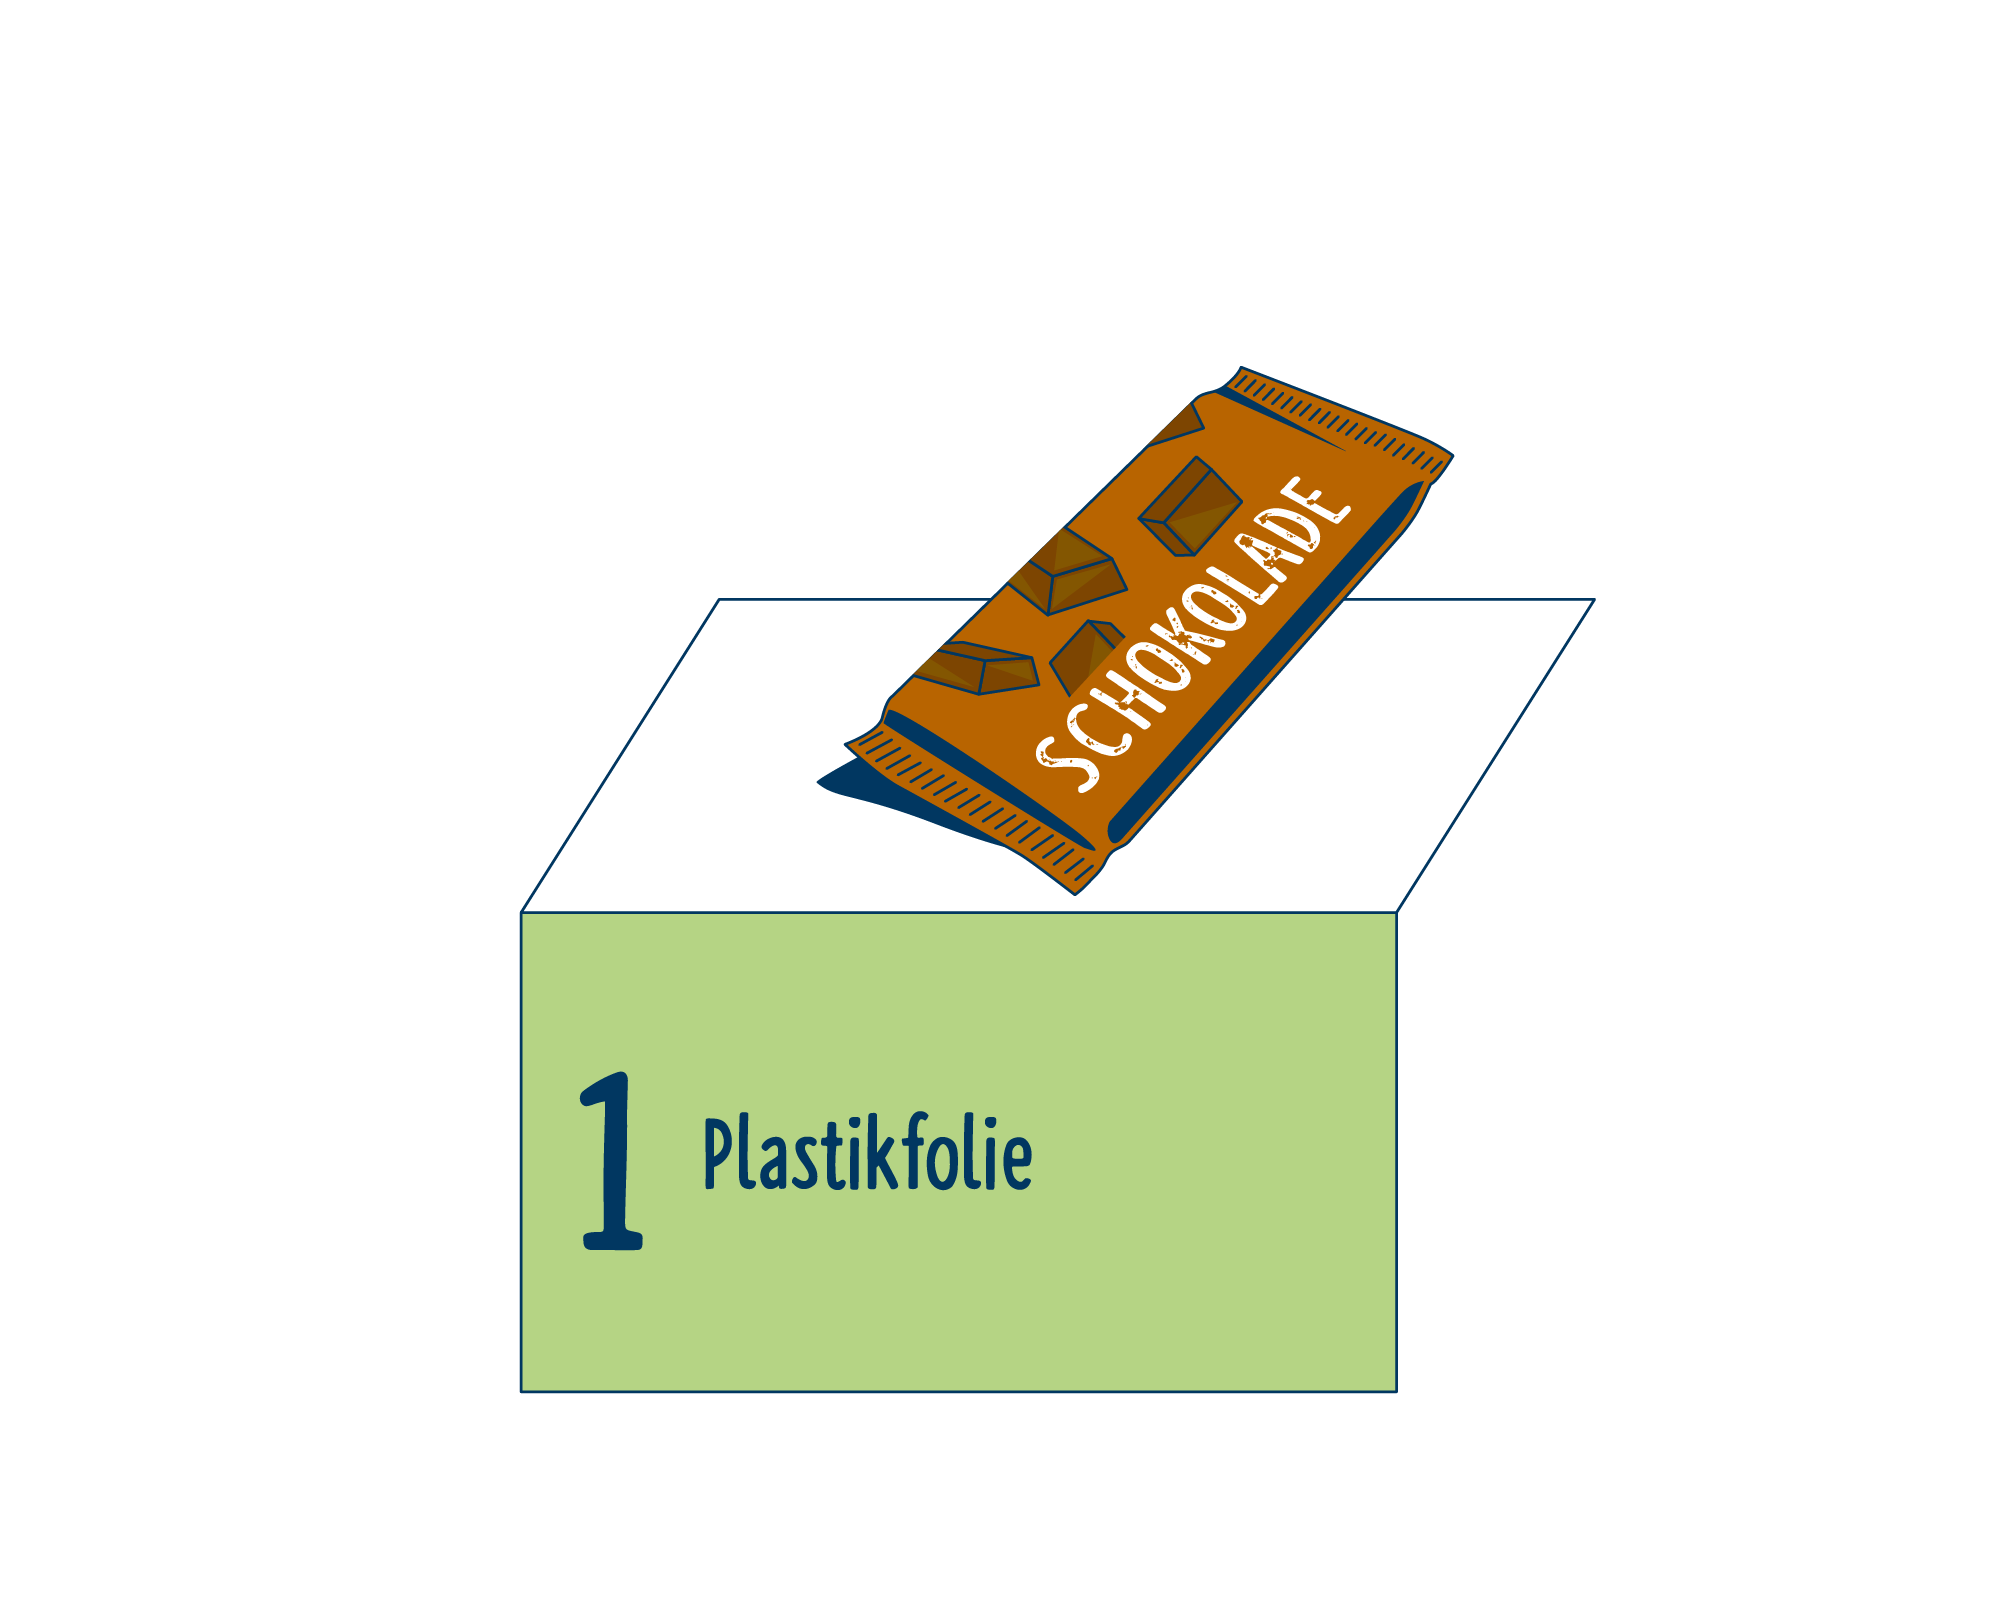 Bild Produktverpackung von Schokolade eingeordnet auf Platz 1, bestehend aus Plastikfolie.